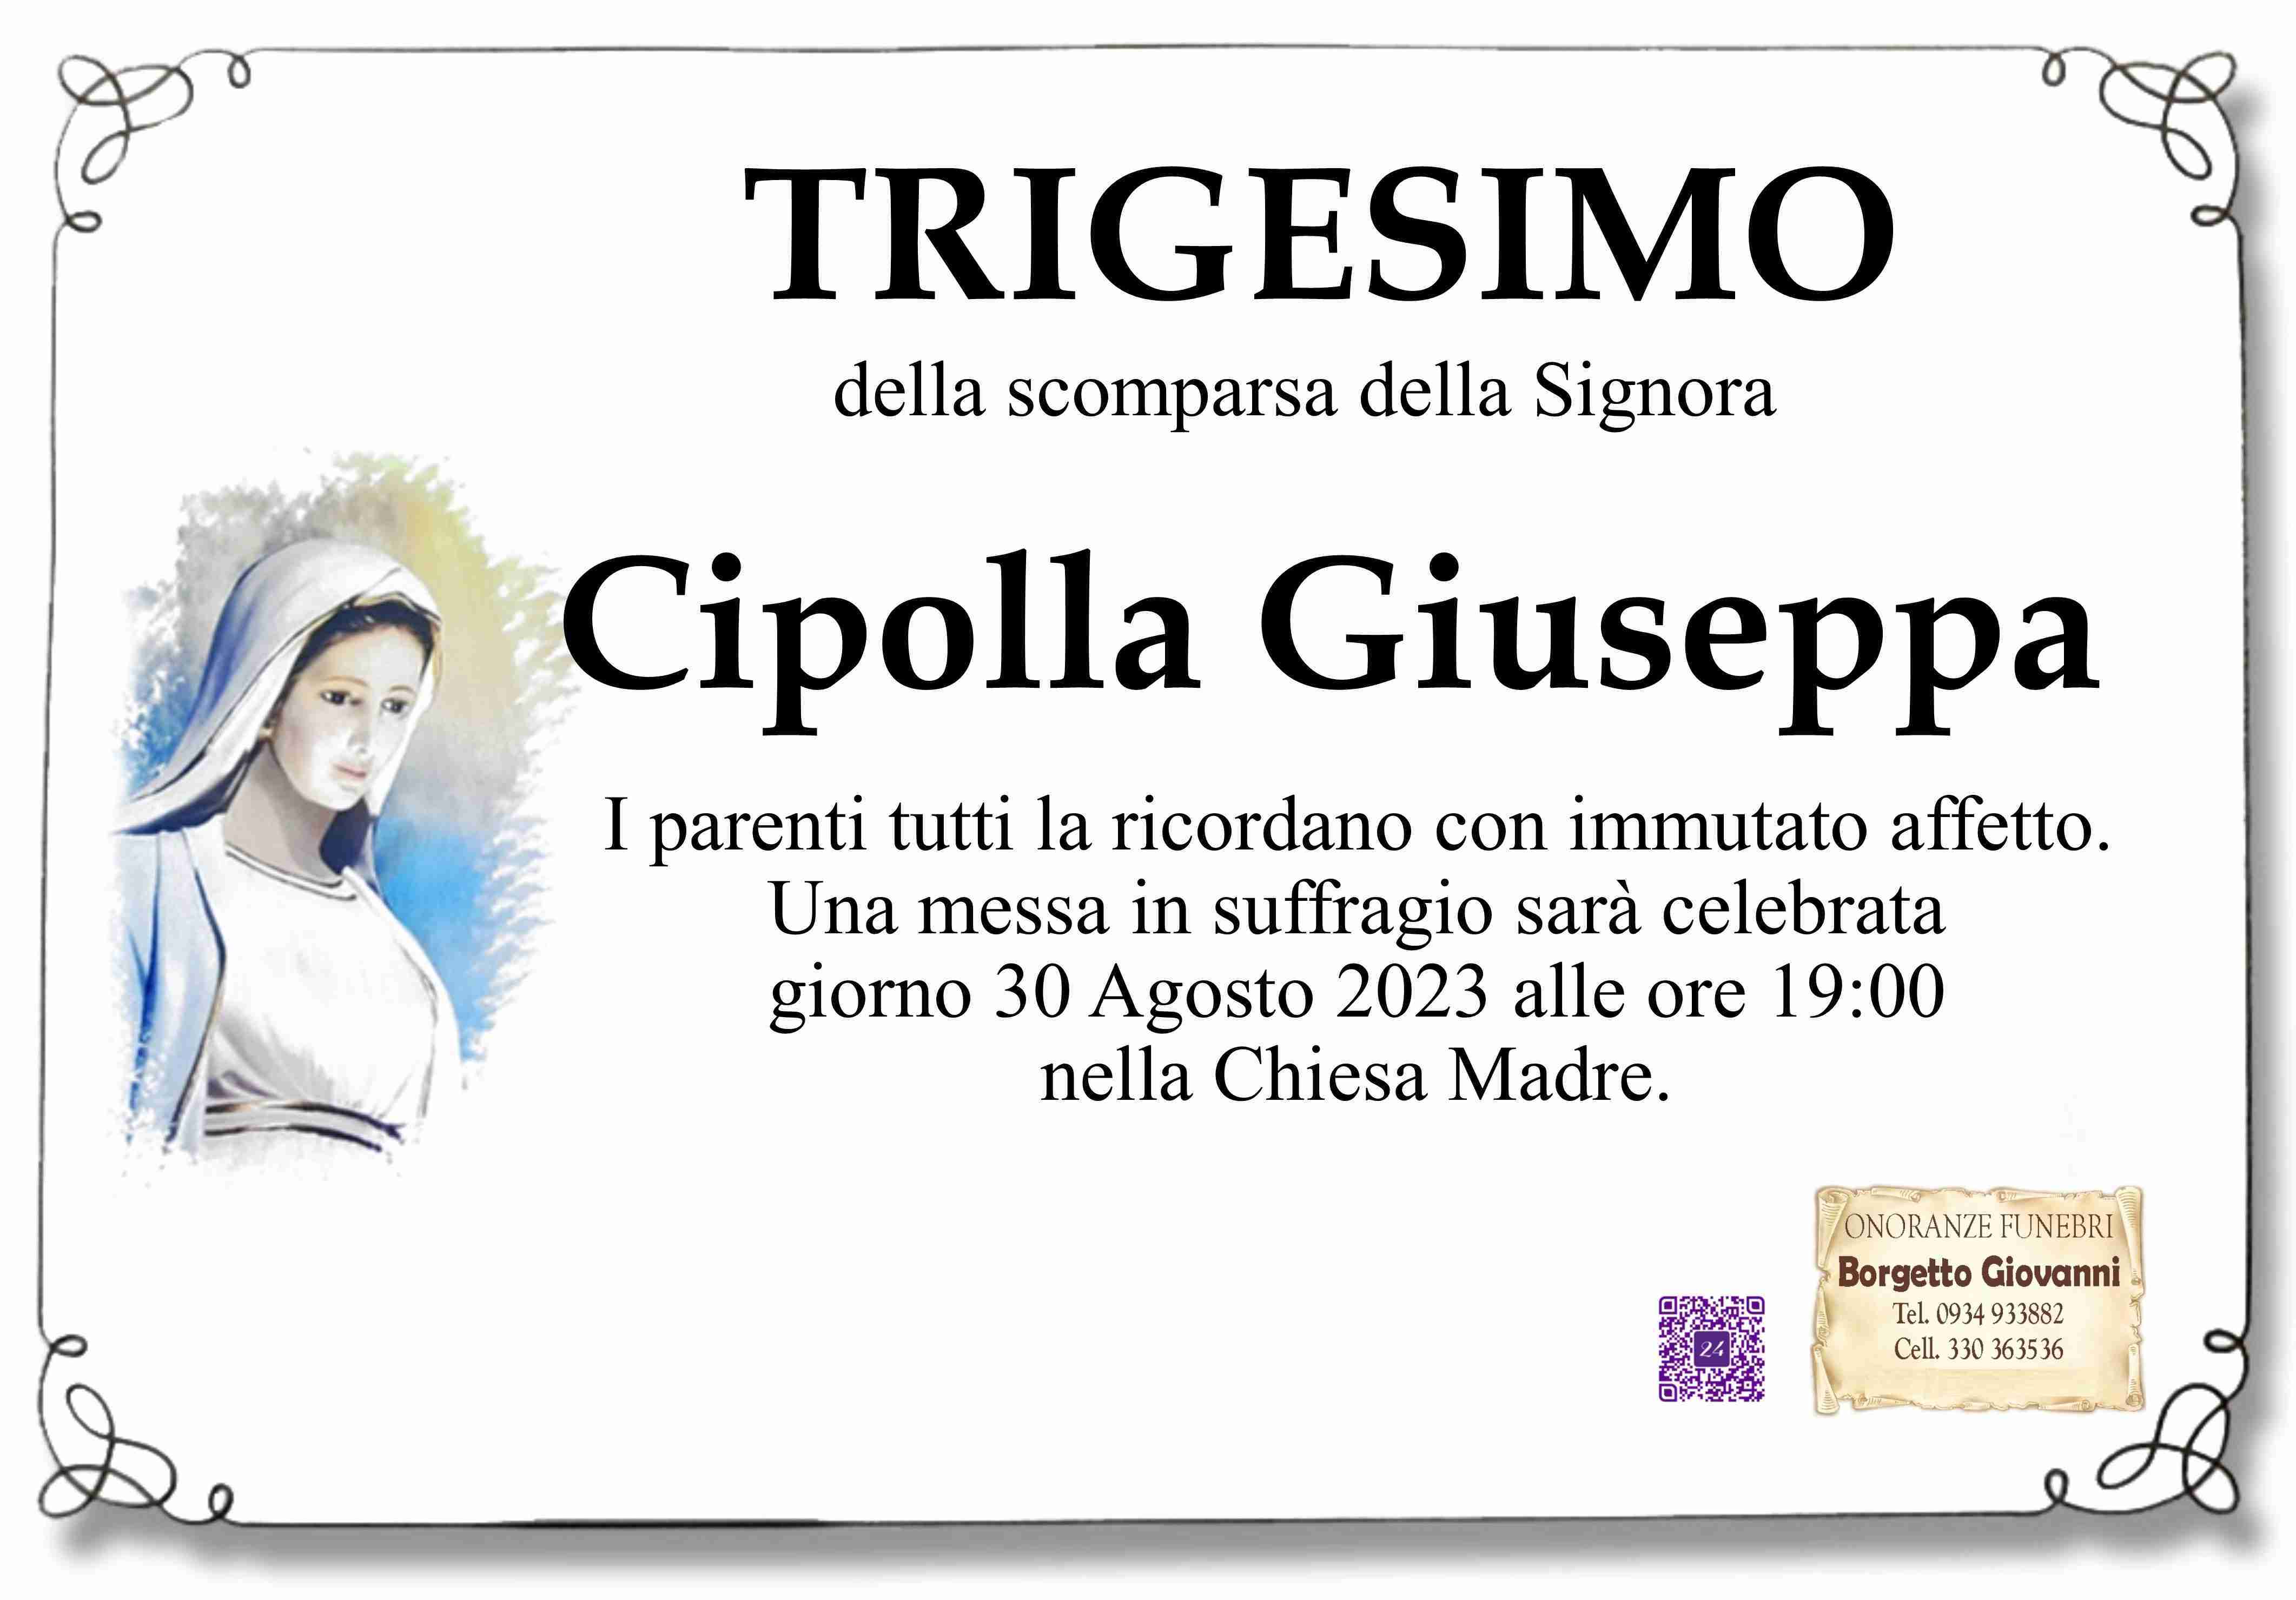 Giuseppa Cipolla